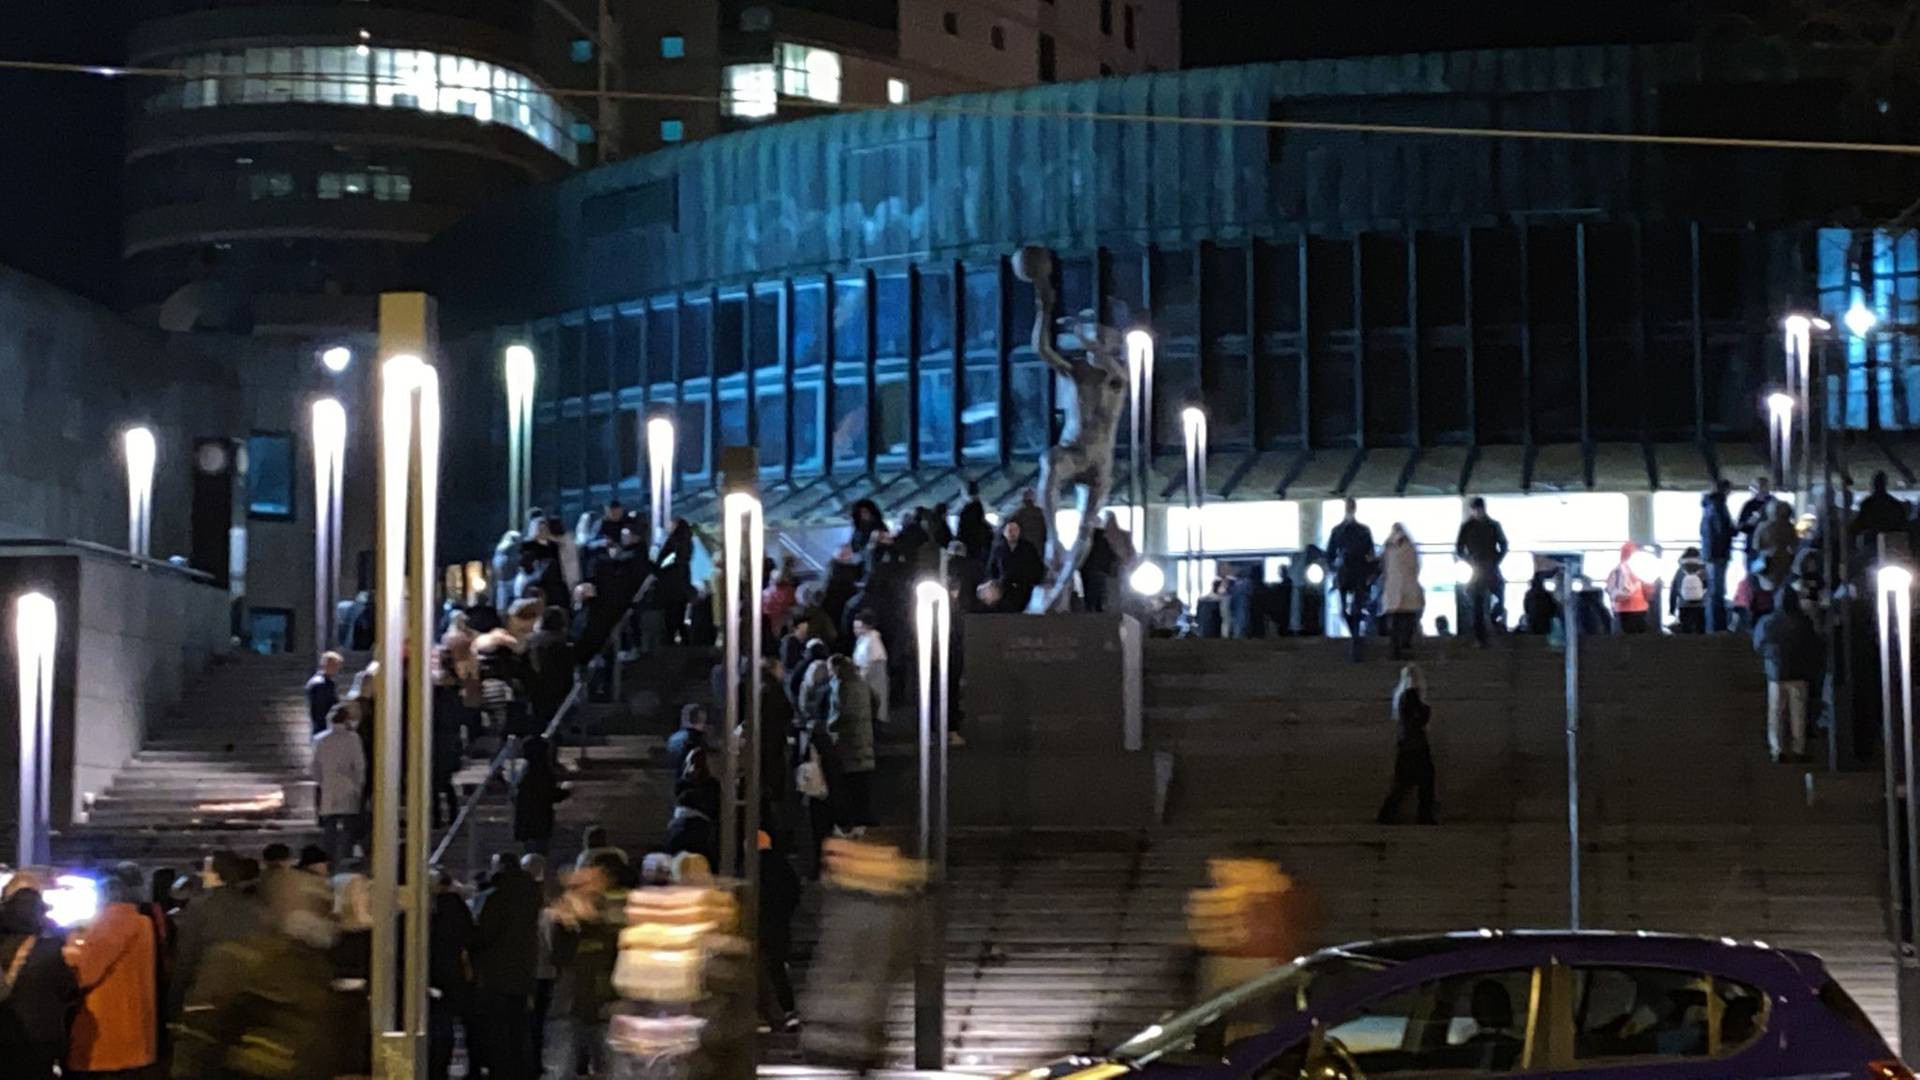 Publiku evakuirali s koncerta klape Intrade zbog dojave o bombi, policija: Dojava je lažna